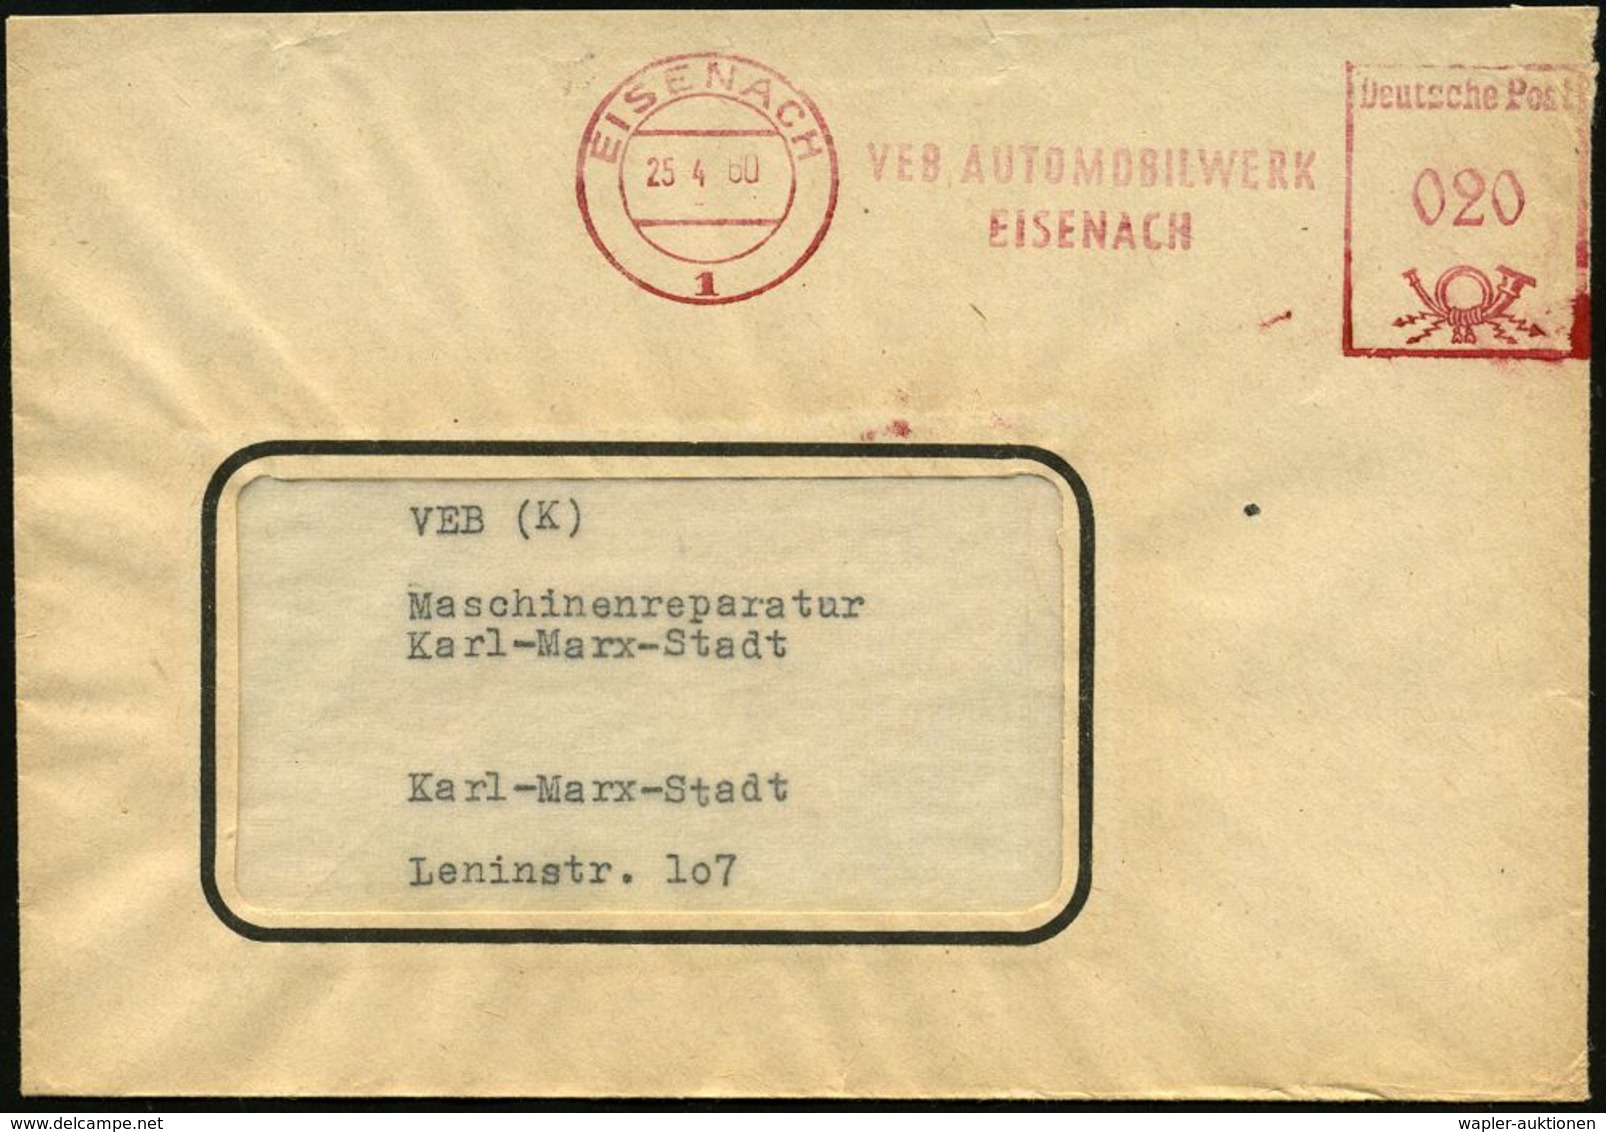 AUTOHERSTELLER D.D.R. : EISENACH/ 1/ VEB AUTOMOBILWERK/ EISENACH 1960 (25.4.) AFS = Vormals BMW Und EMW (u. Ex SAG Awtov - Cars